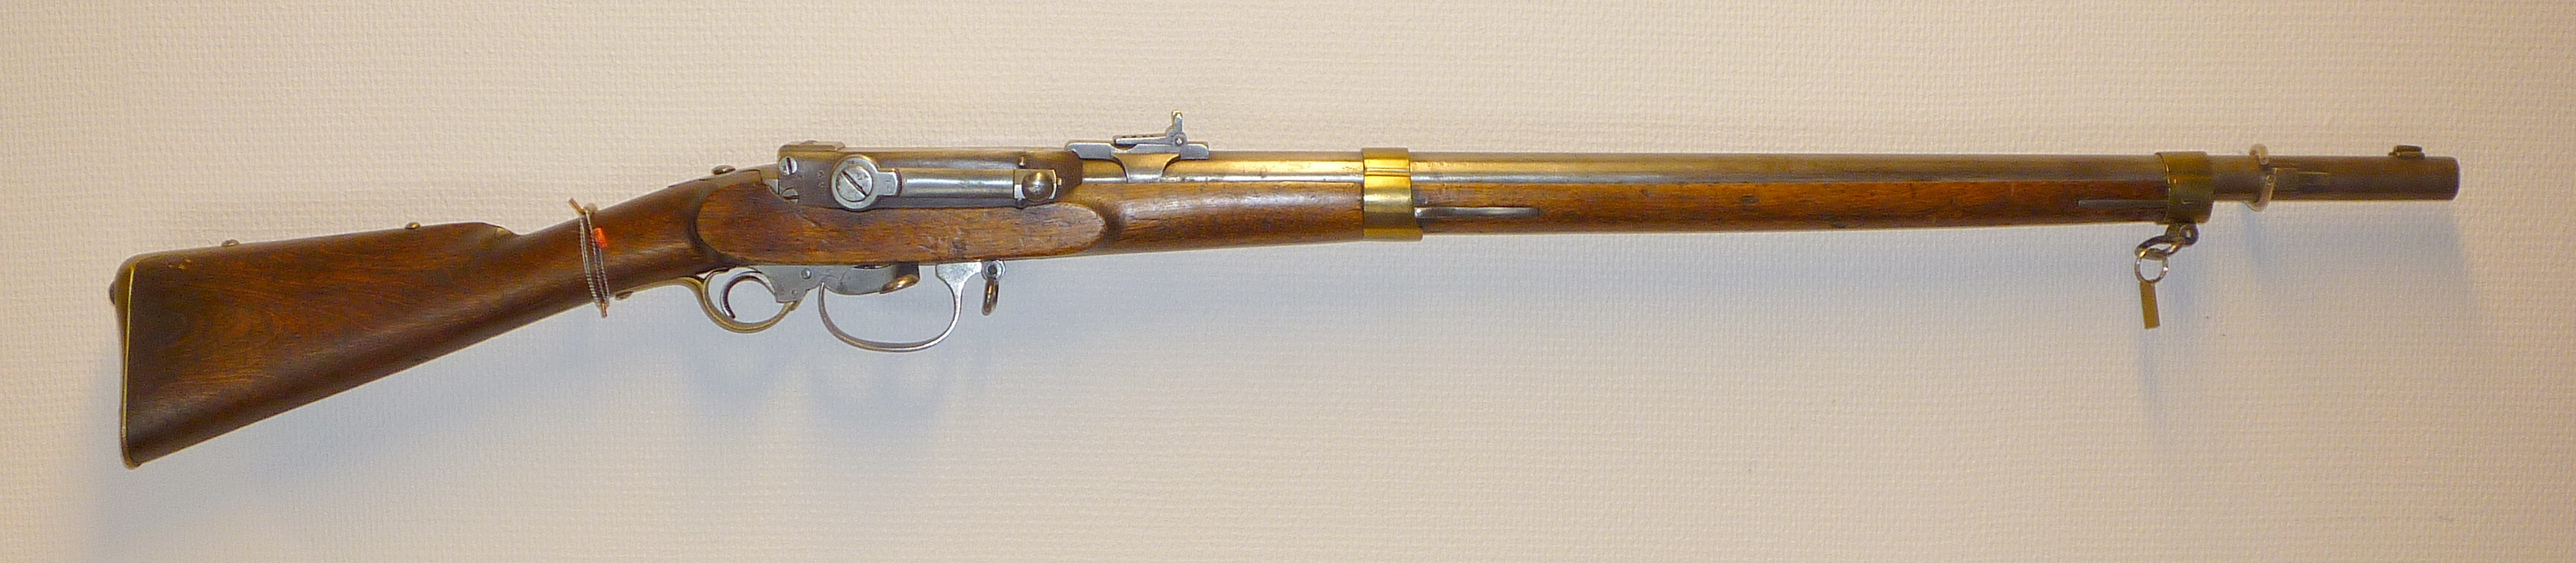 ./guns/rifle/bilder/Rifle-Kongsberg-Kammerlader-M1848-57-Krigsskole-1.jpg